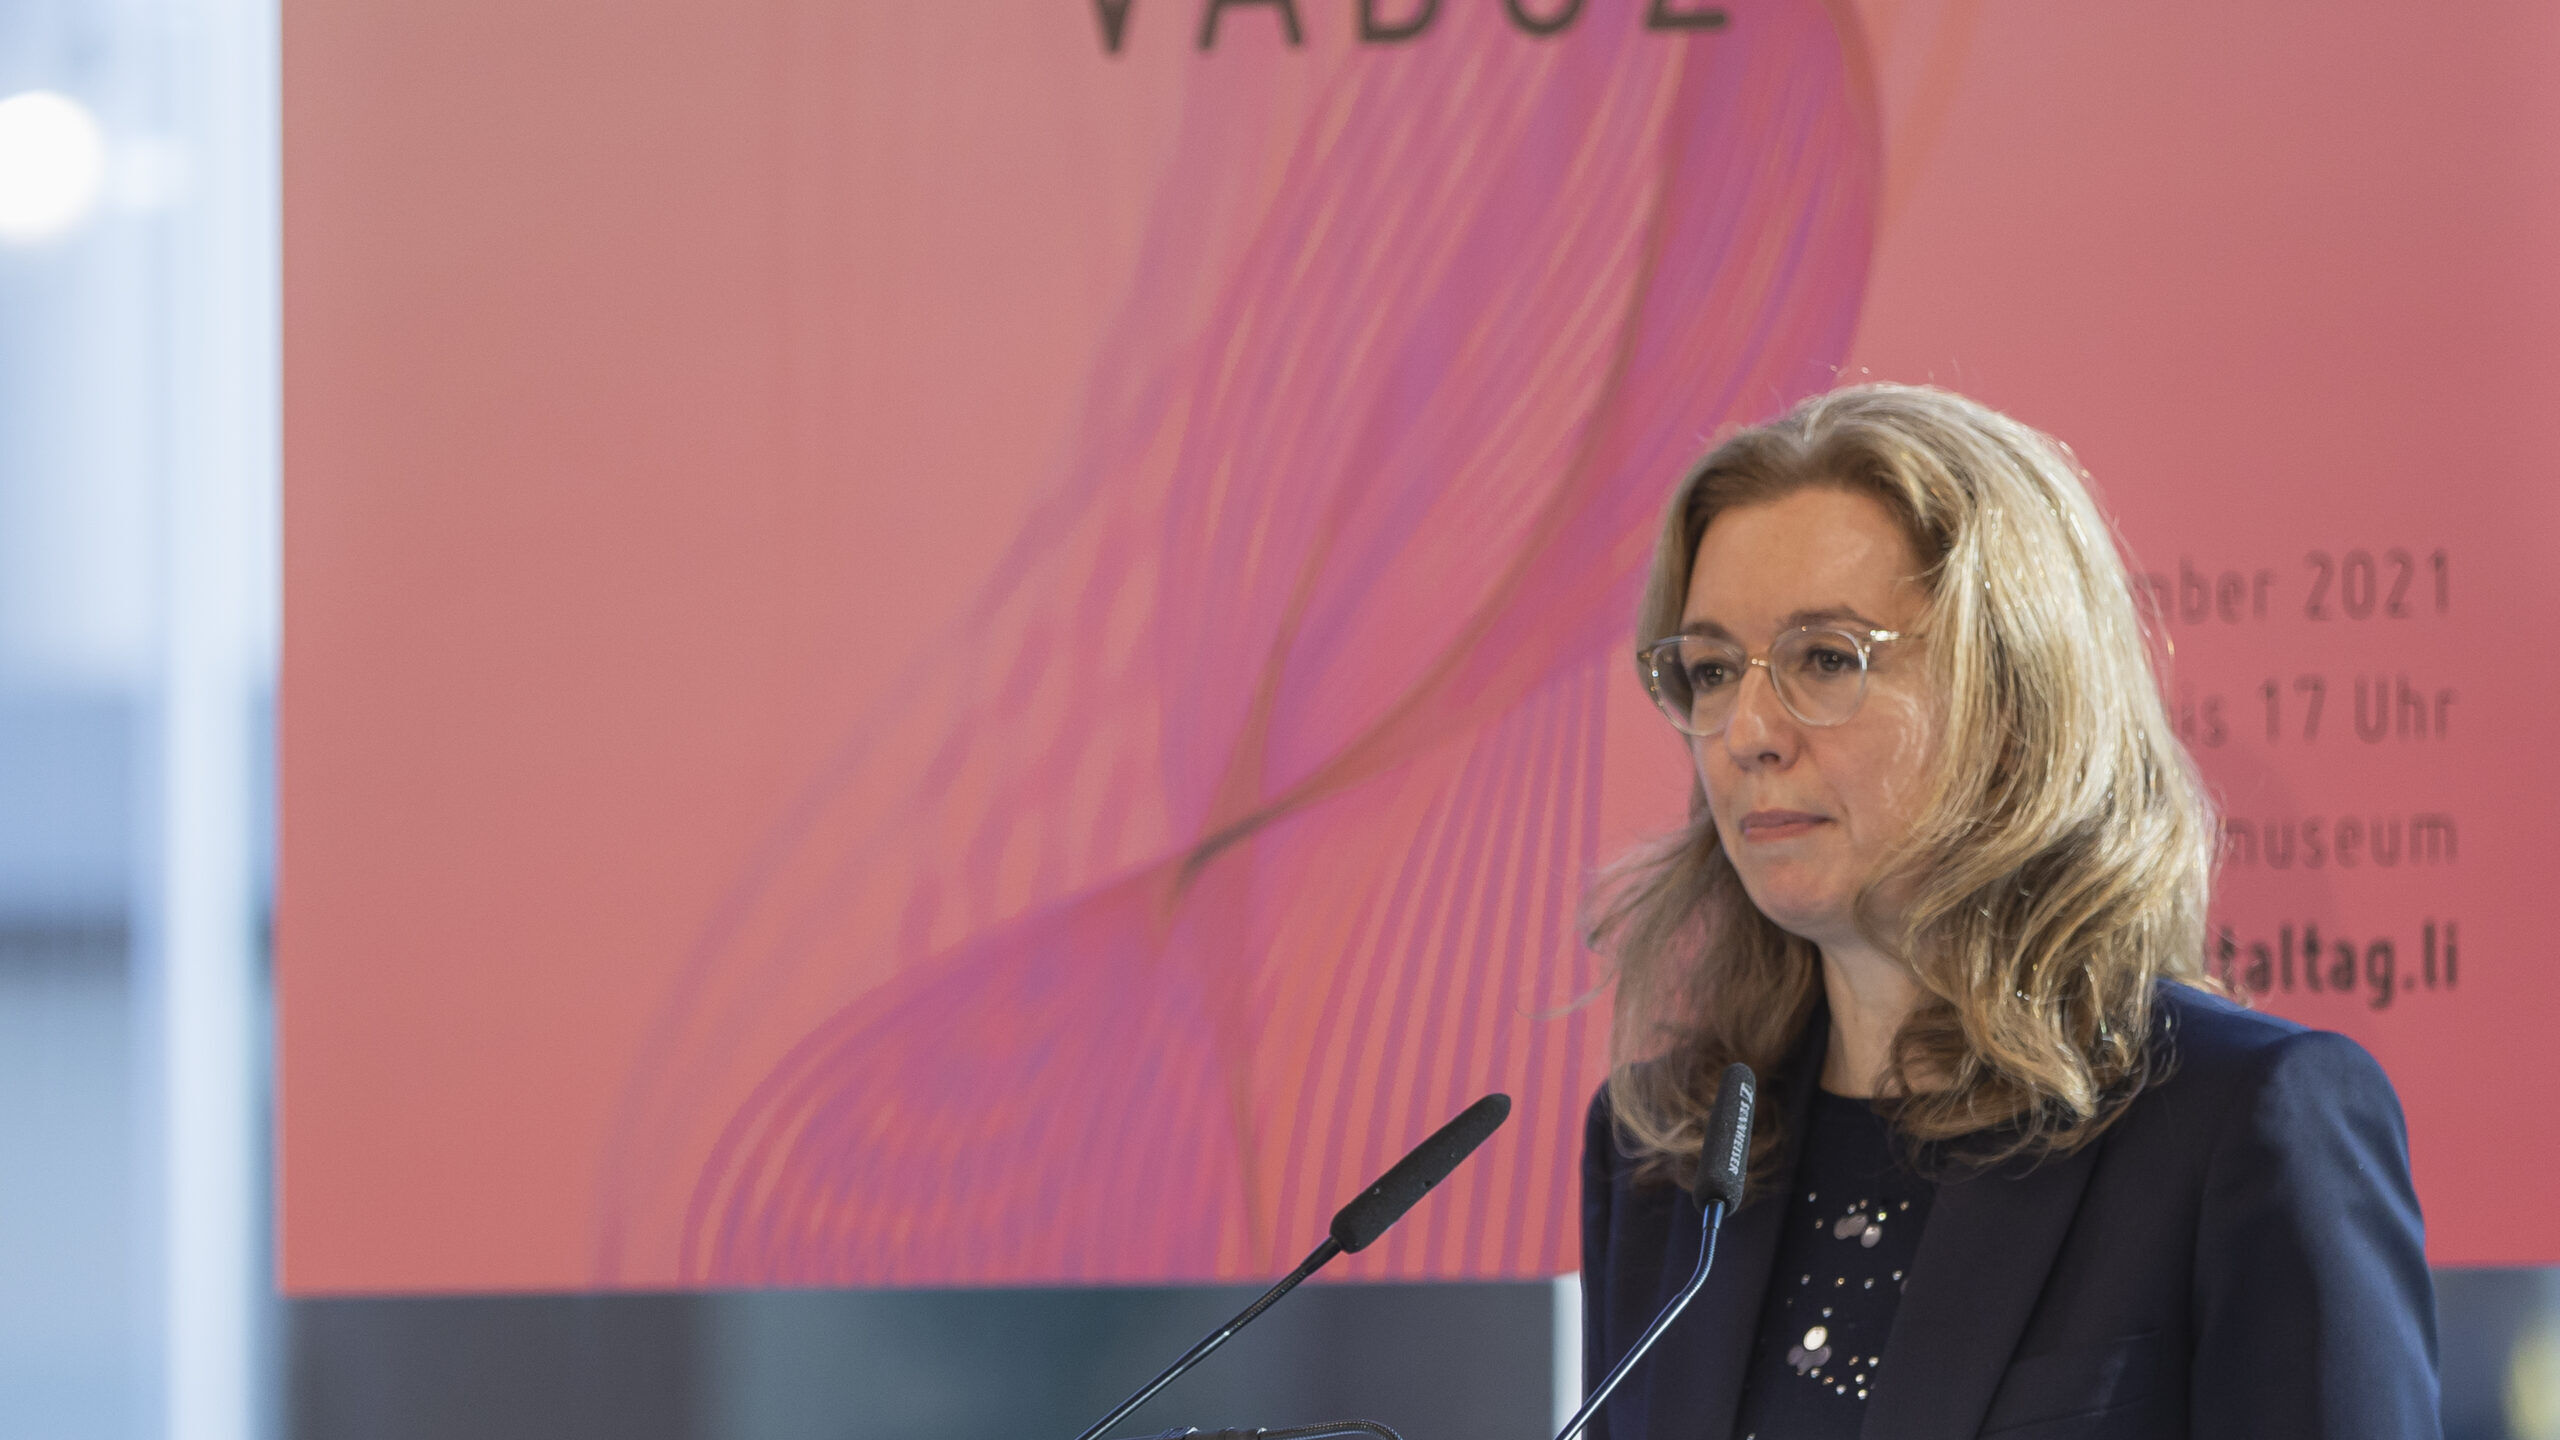 Le "Digitaltag Vaduz", accueilli par le Kunstmuseum de la capitale de la Principauté de Liechtenstein le samedi 6 novembre 2021, a suscité l'enthousiasme du public et des intervenants en analogie avec le "Swiss Digital Day" du lendemain 10 : l'intervention de la vice-première ministre Sabine Mounani